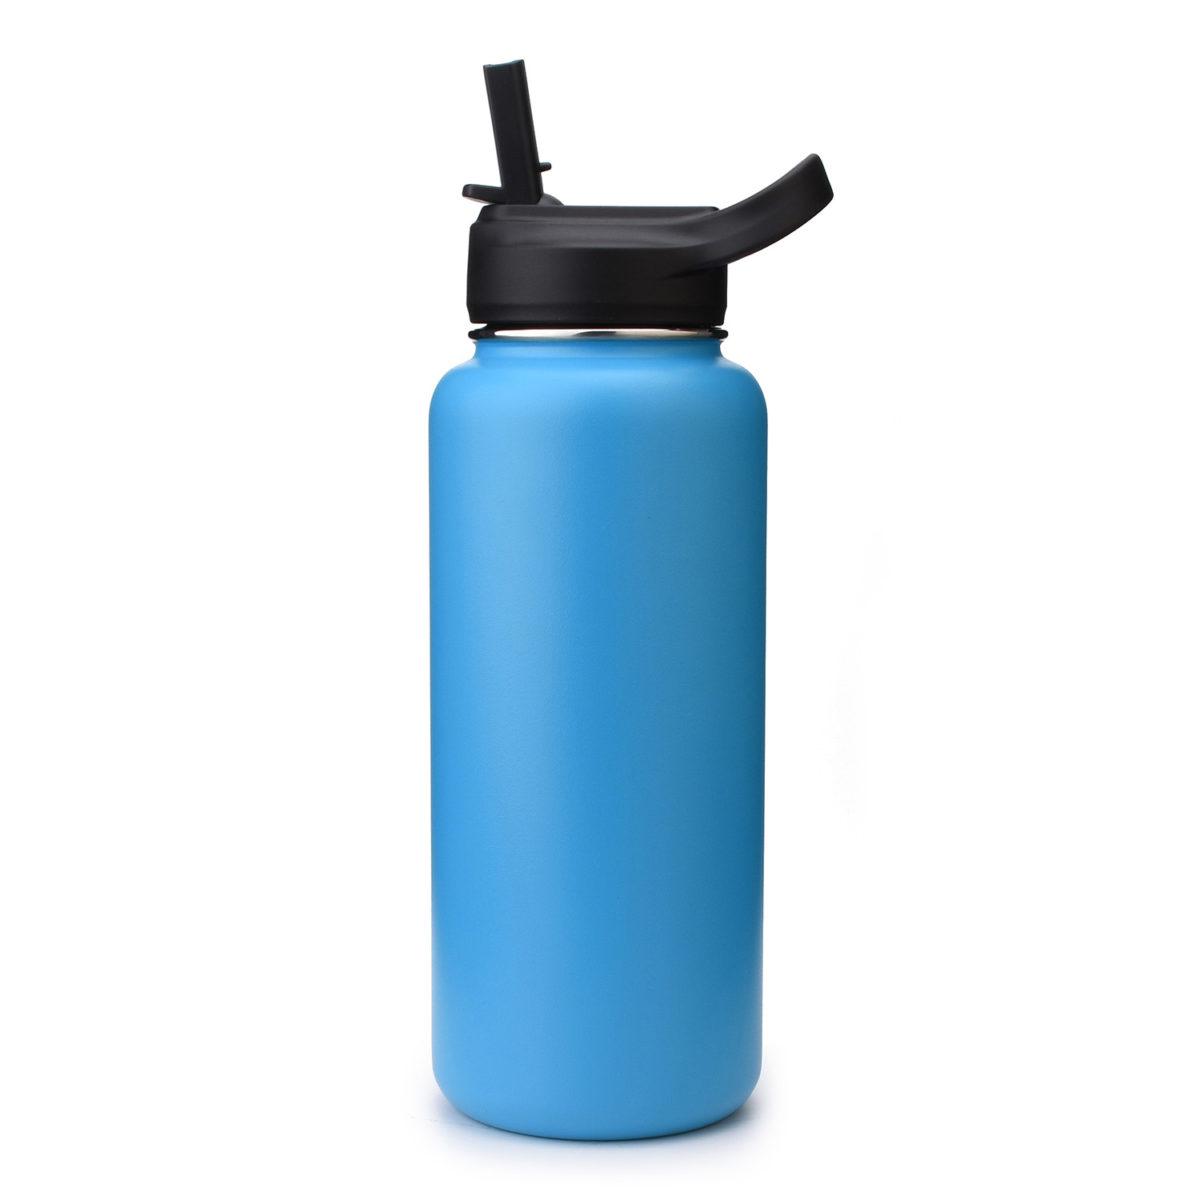 https://www.waterbottle.tech/wp-content/uploads/2020/08/wide-mouth-water-bottle-with-straw-lid-cap-s113292-1-1200x1200.jpg